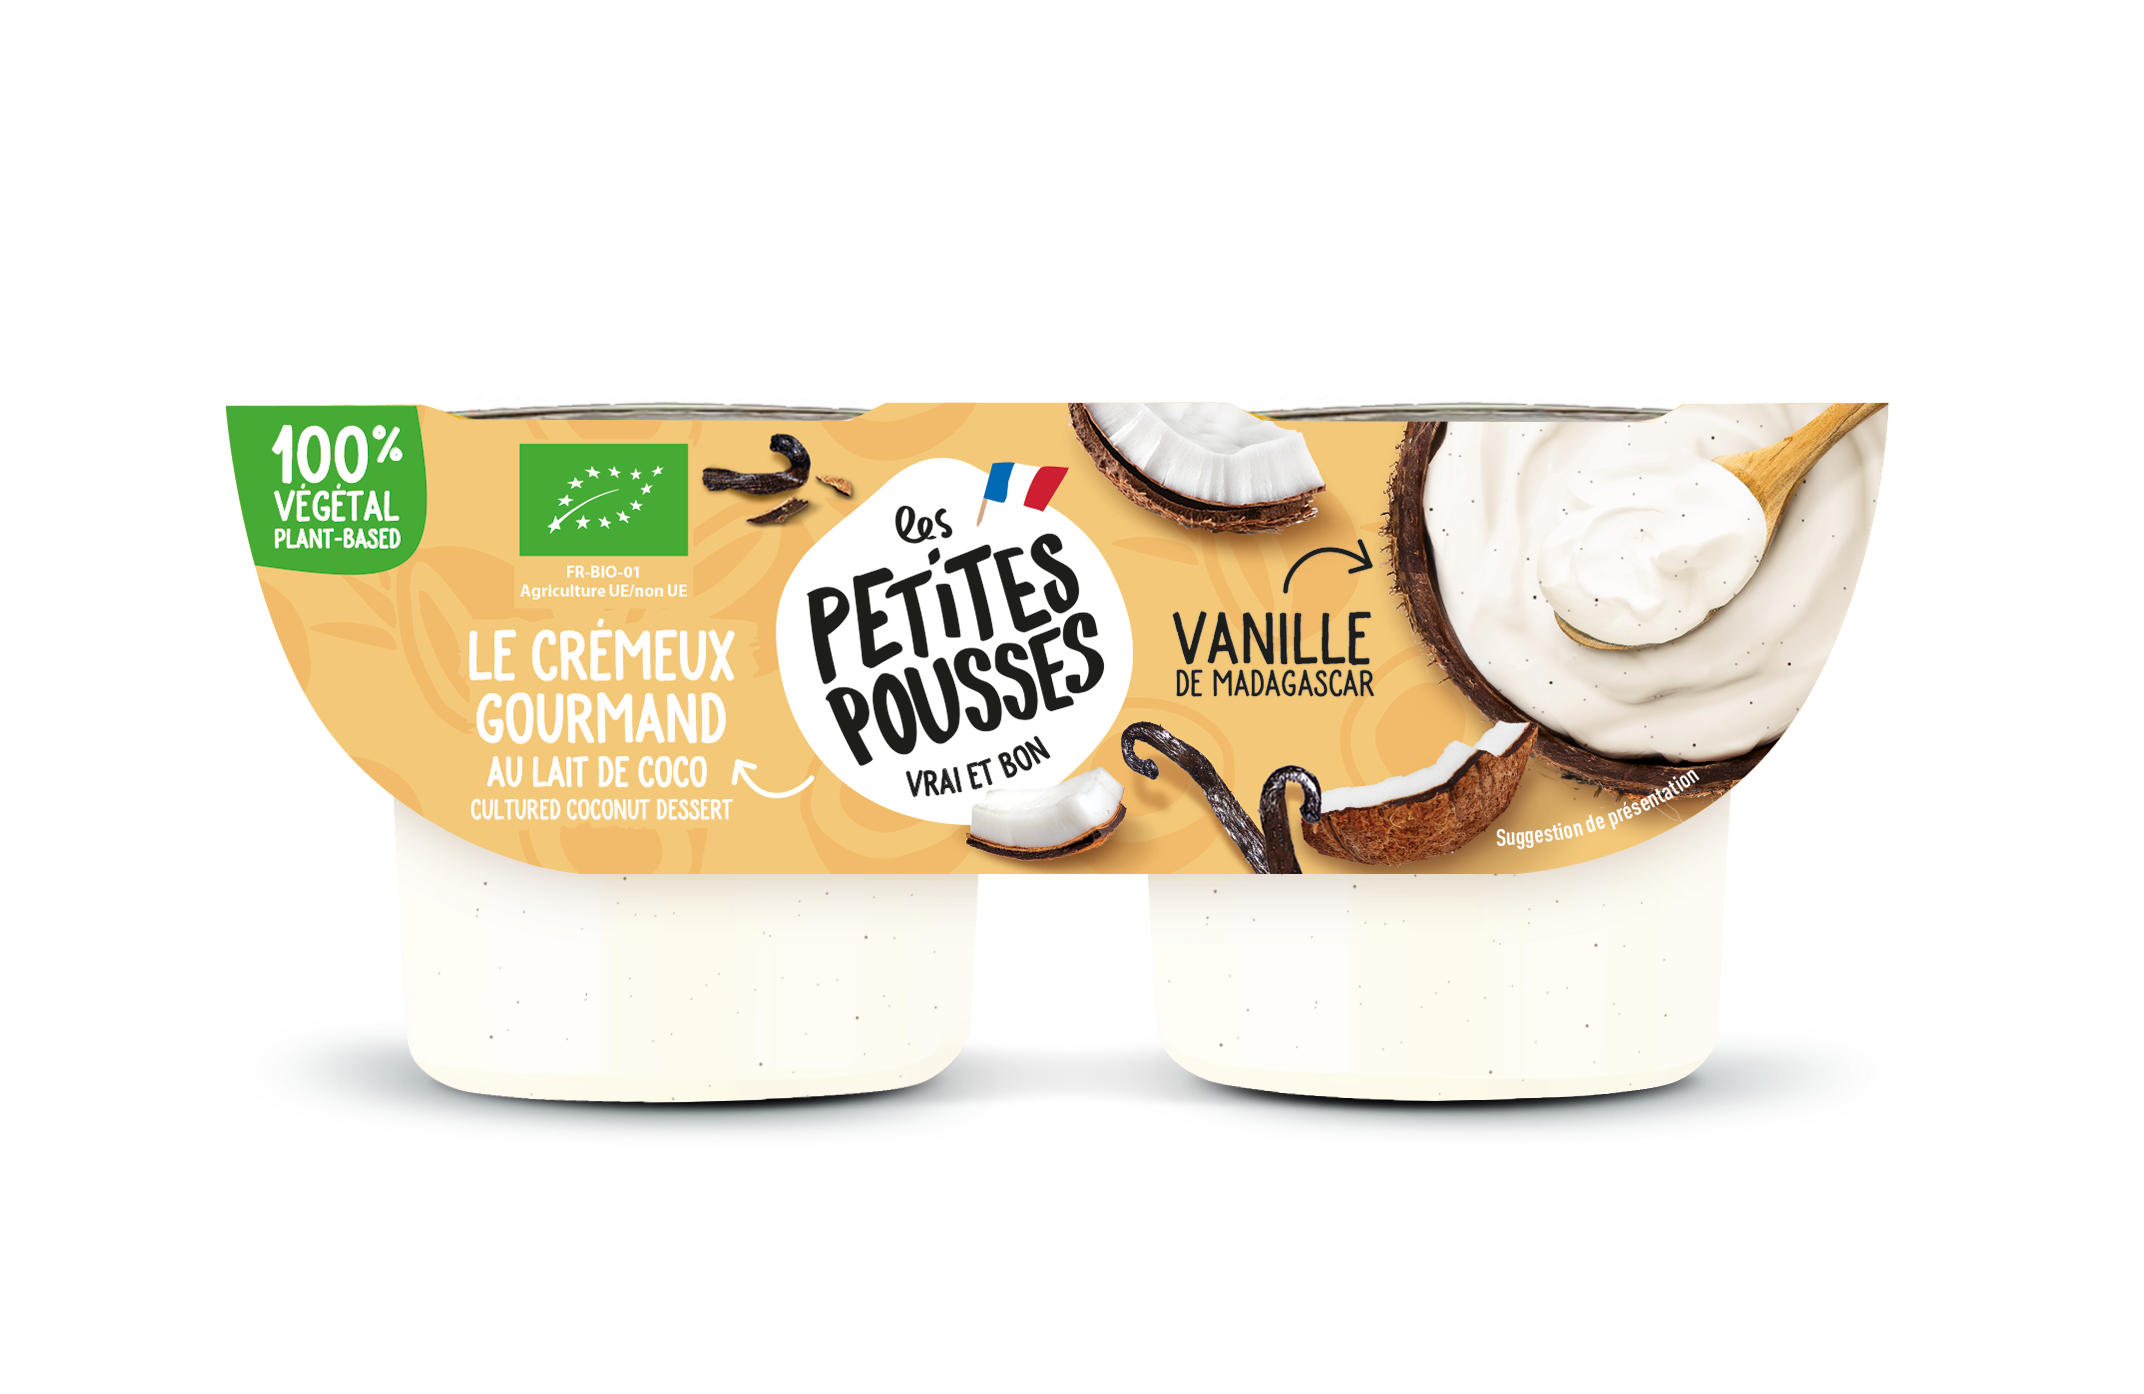 Brassé lait d'amande vanille, vrai-faux yaourt végétal - Les Petites Pousses